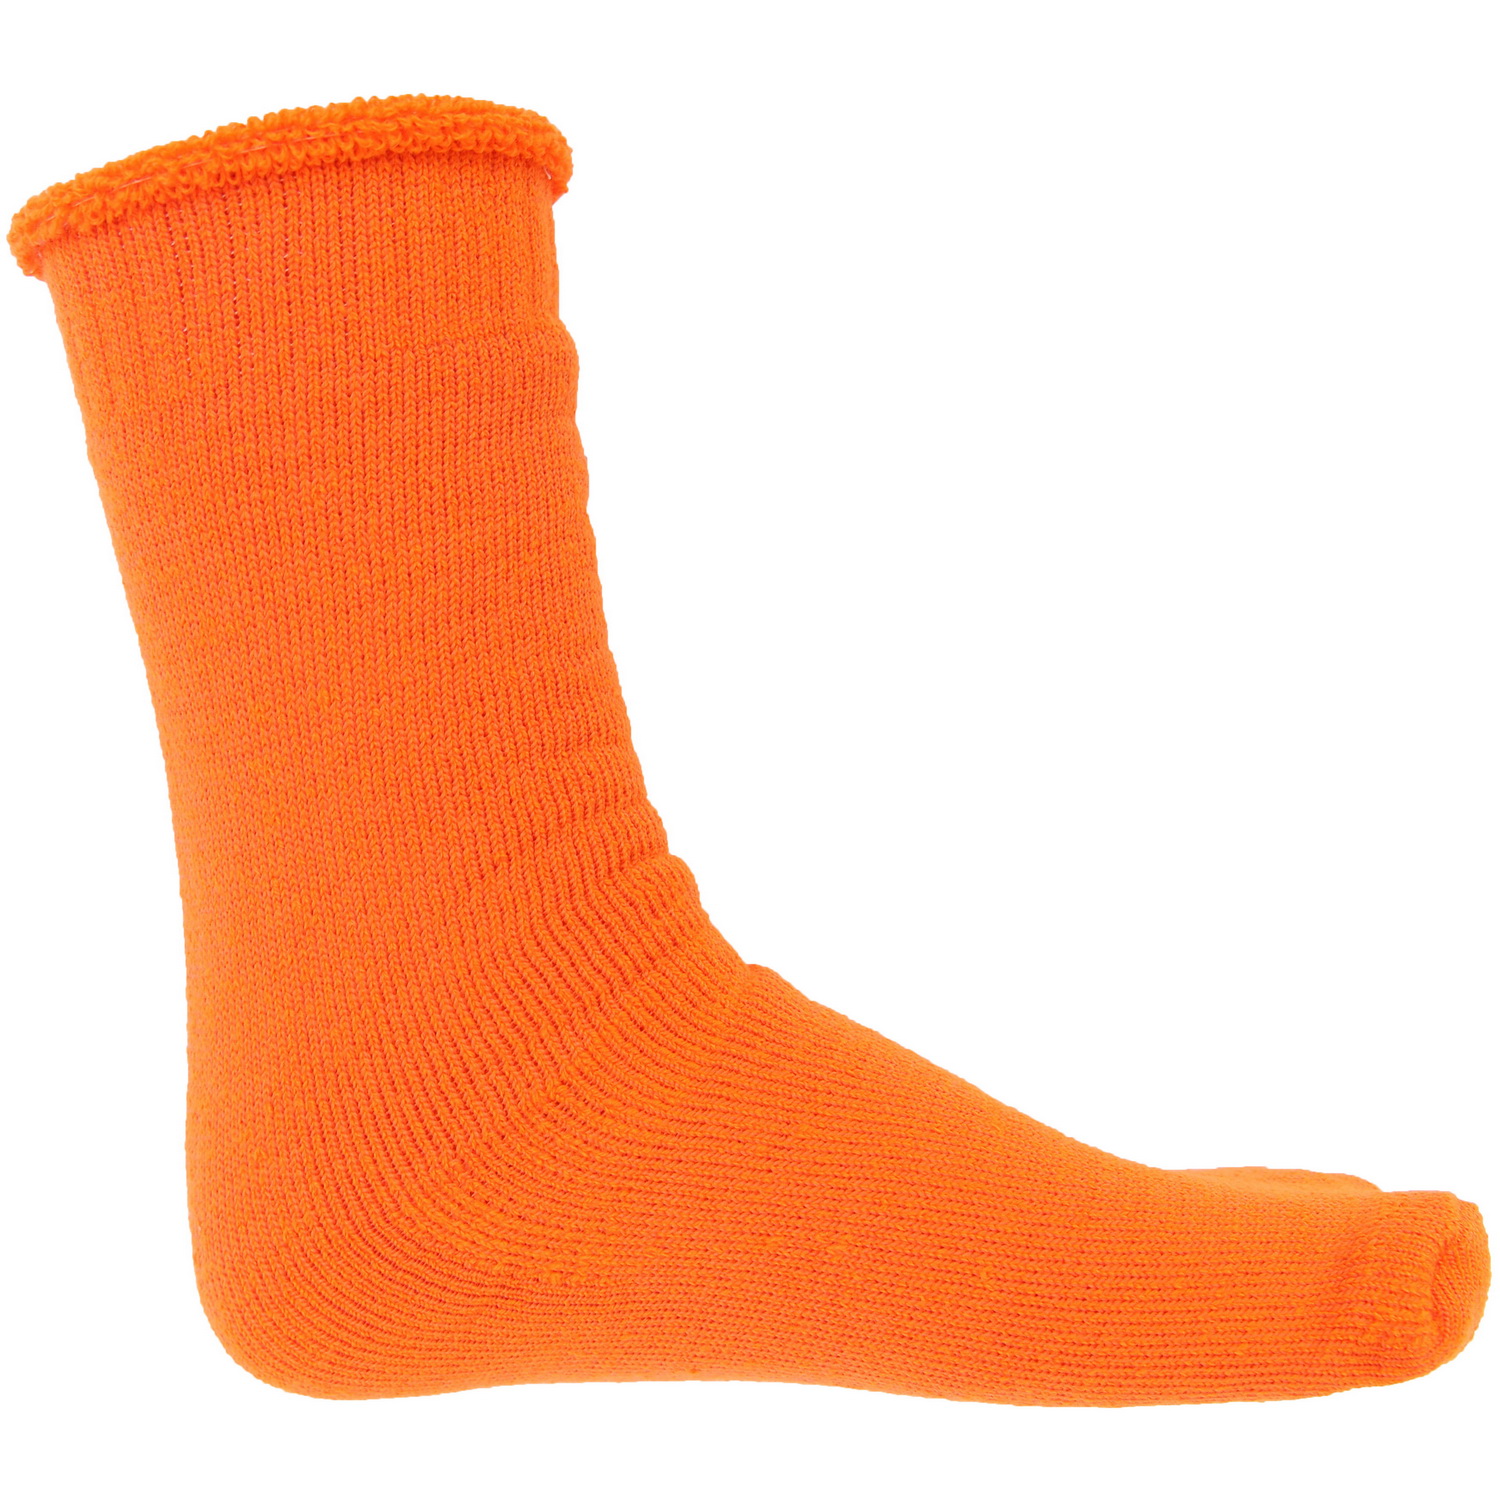 HiVis Woolen Socks - 3 pair pack